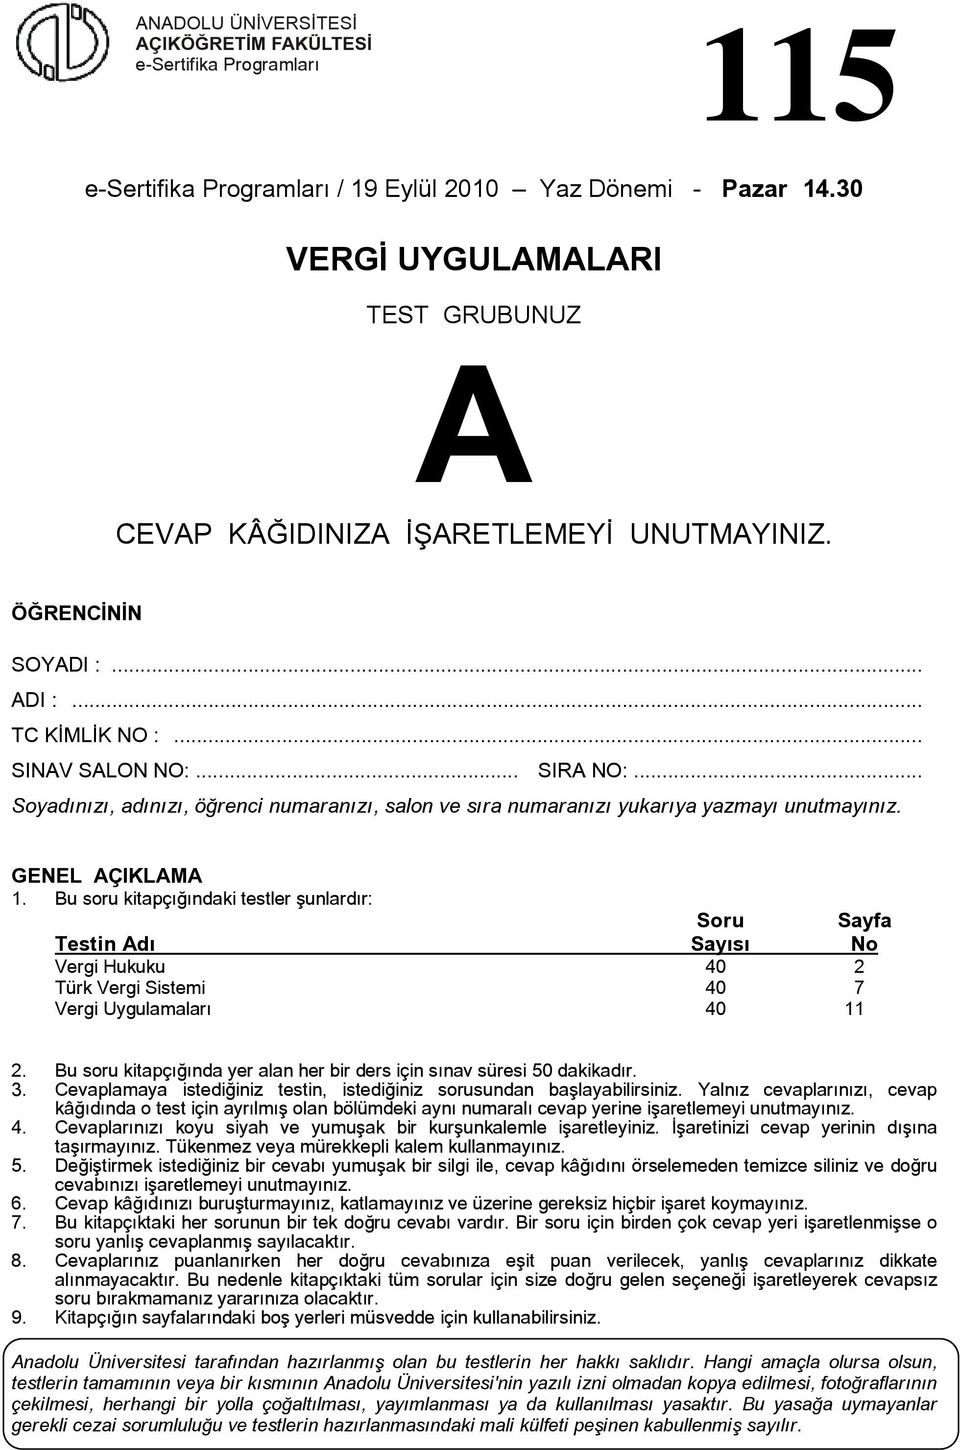 u soru kitapçığındaki testler şunlardır: Soru Sayfa Testin dı Sayısı No Vergi Hukuku 40 2 Türk Vergi Sistemi 40 7 Vergi Uygulamaları 40 11 2.